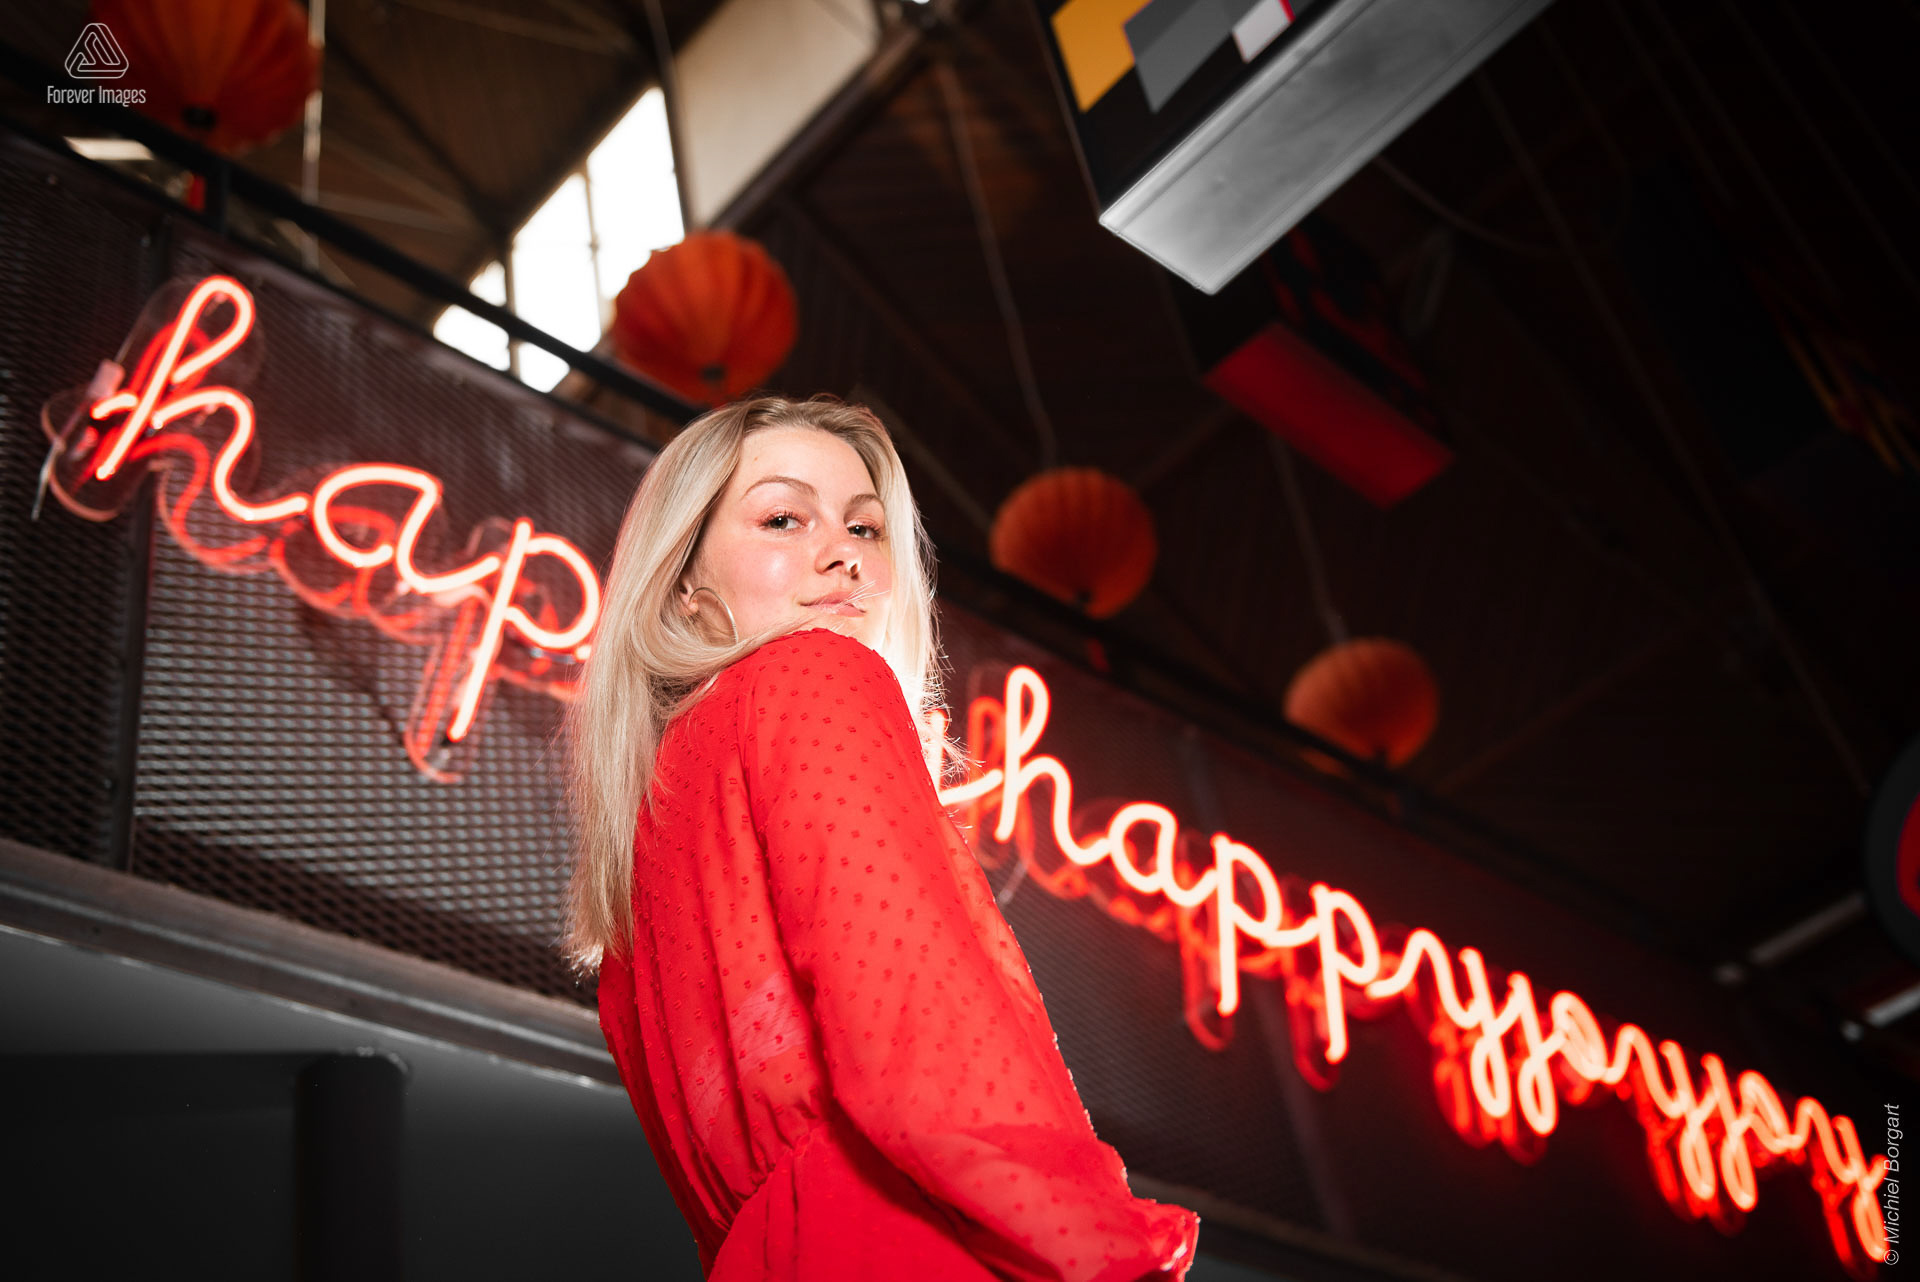 Portretfoto jonge dame in rode jurk voor neon tekst | Porscha Luna de Jong Happyhappyjoyjoy | Portretfotograaf Michiel Borgart - Forever Images.